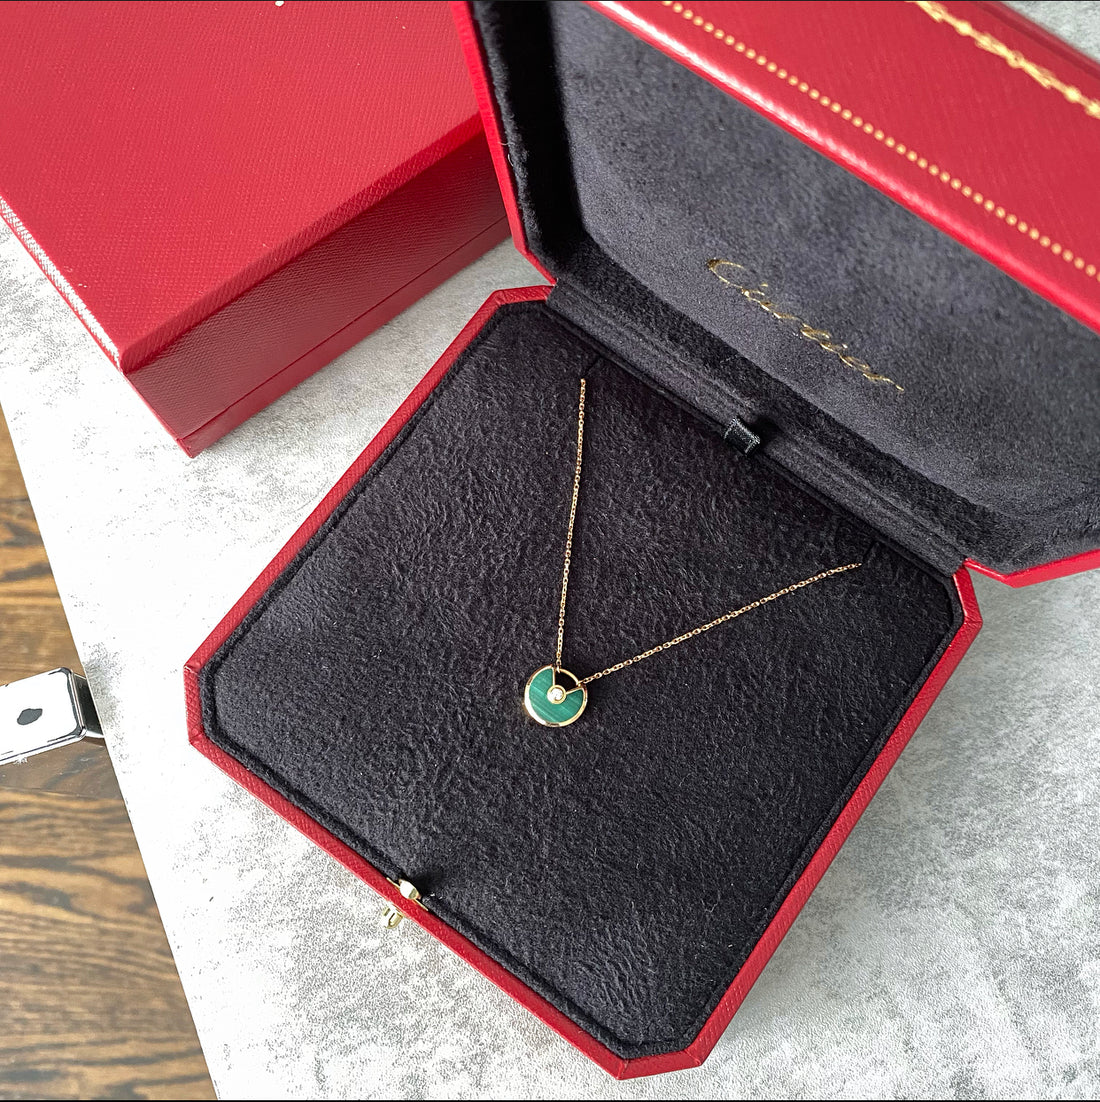 Cartier Amulette de Cartier 18k Gold with Diamond and Malachite Necklace